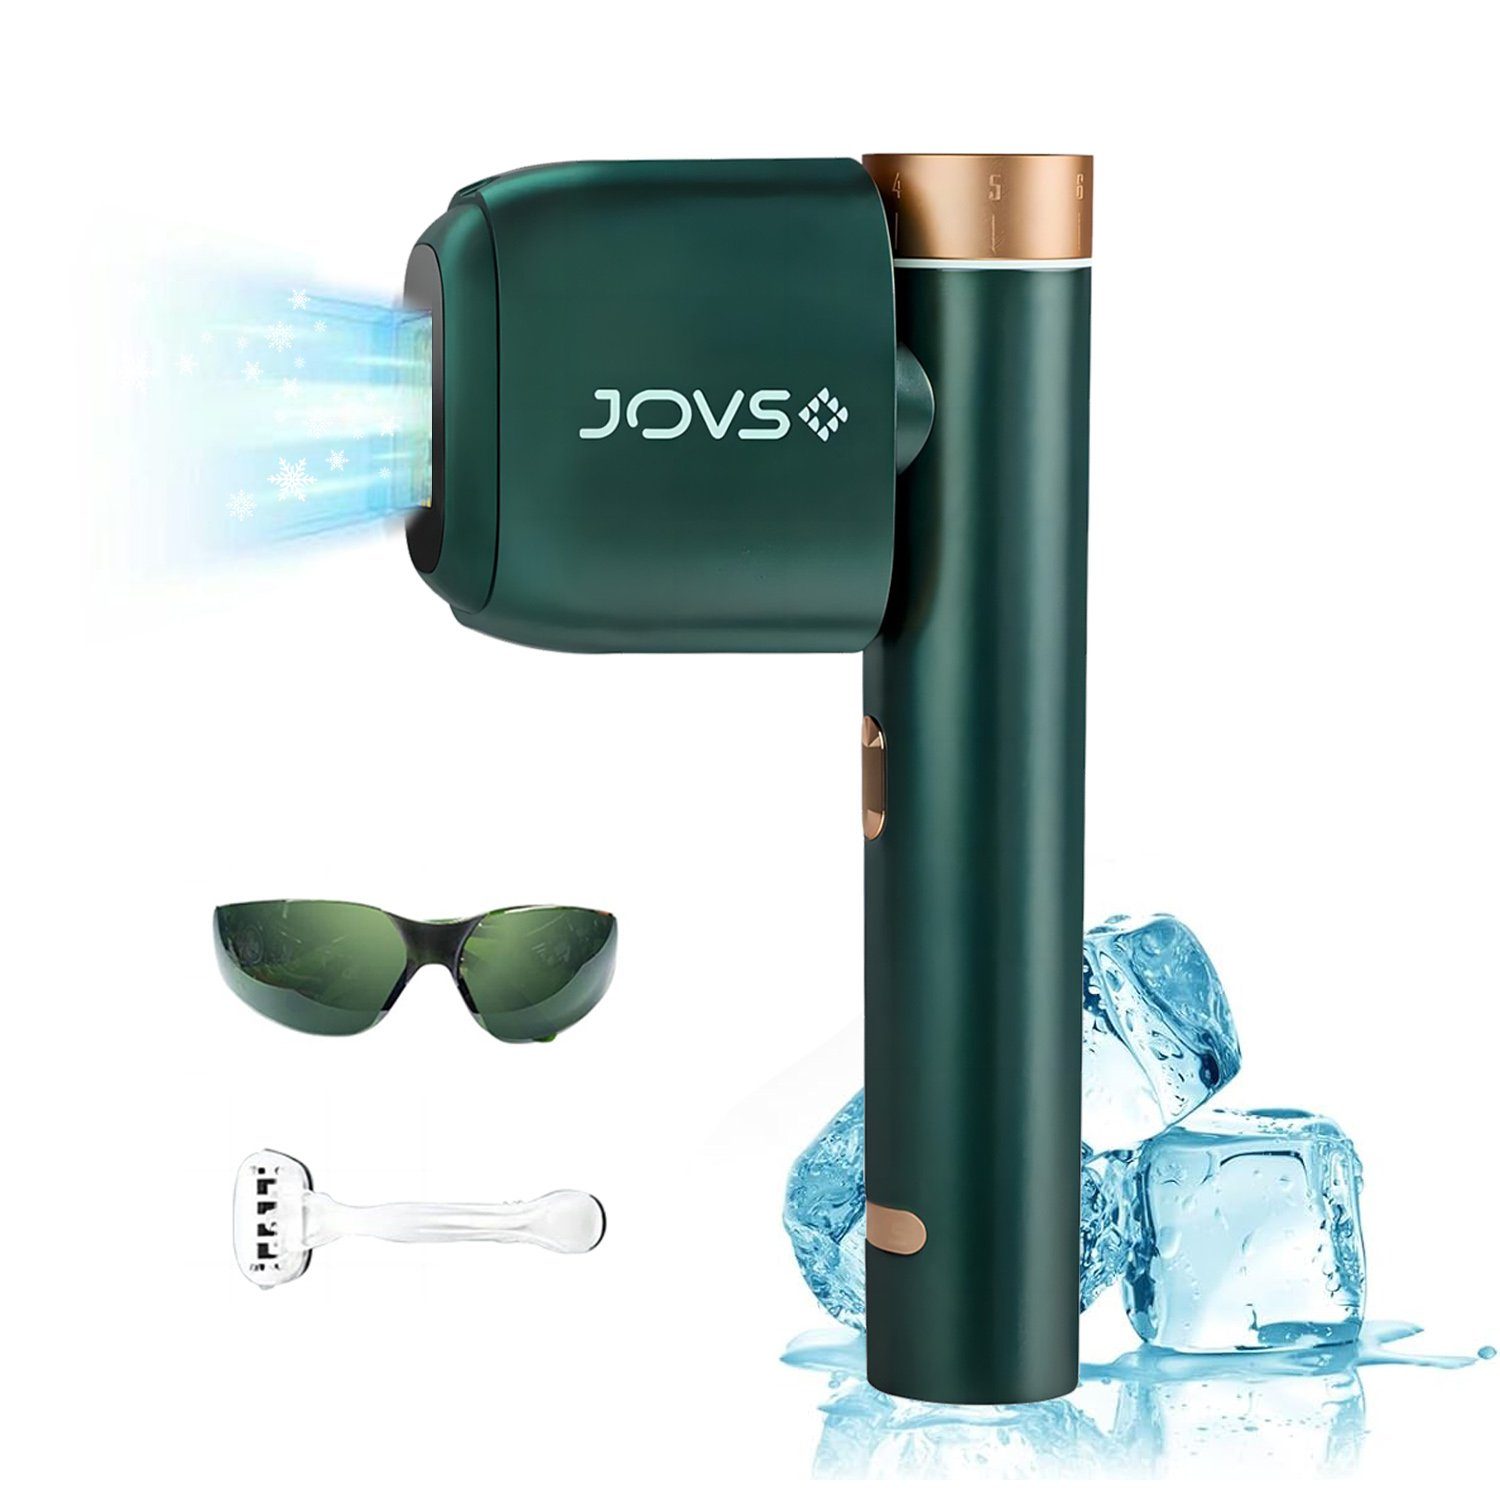 JOVS Haarentfernungsgerät Multifrequenz-Dauerimpuls-Technologie Haarentfernungsgerät, 590-1200nm Lichtimpulse, für Männer Haarentfernung und Frauen